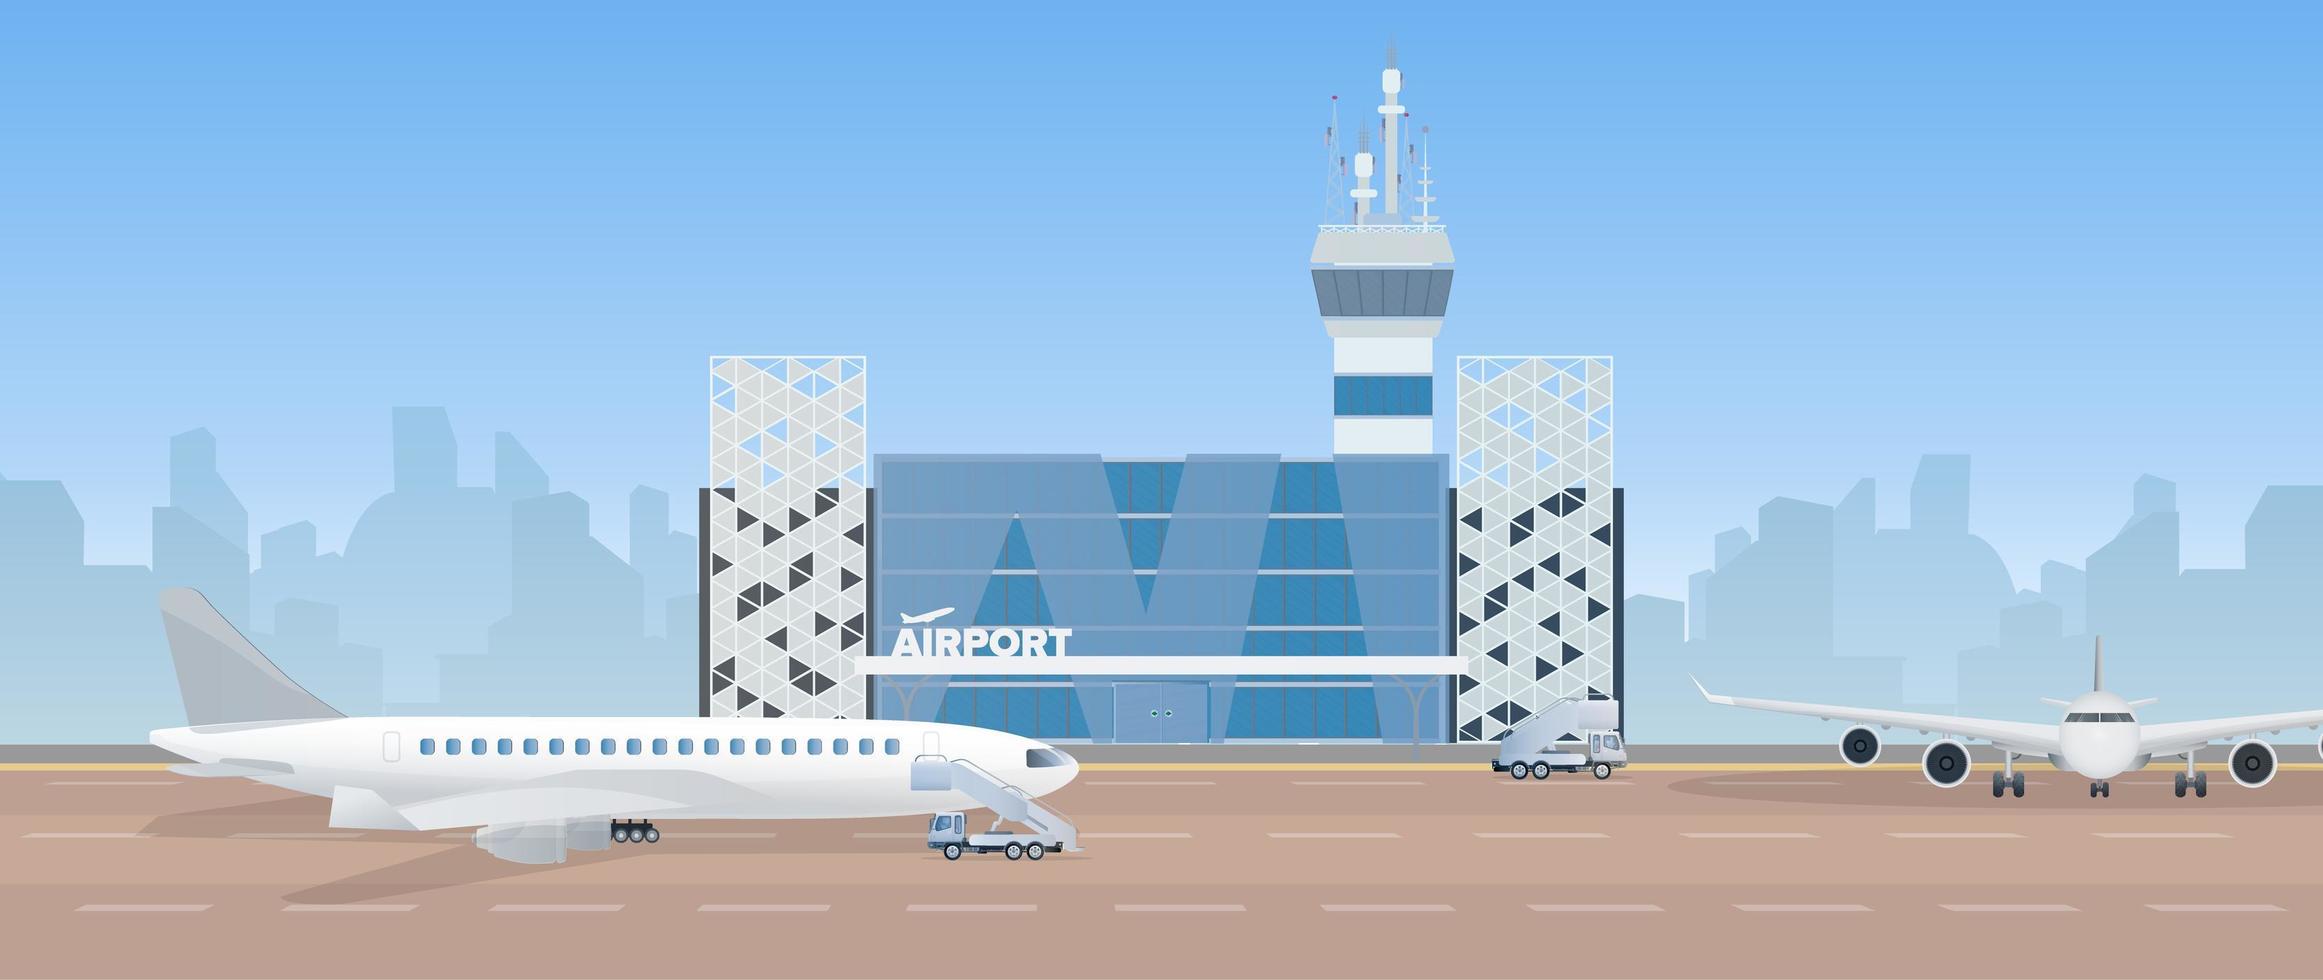 aéroport moderne. piste. avion sur la piste. aéroport dans un style plat. silhouette de la ville. illustration vectorielle vecteur